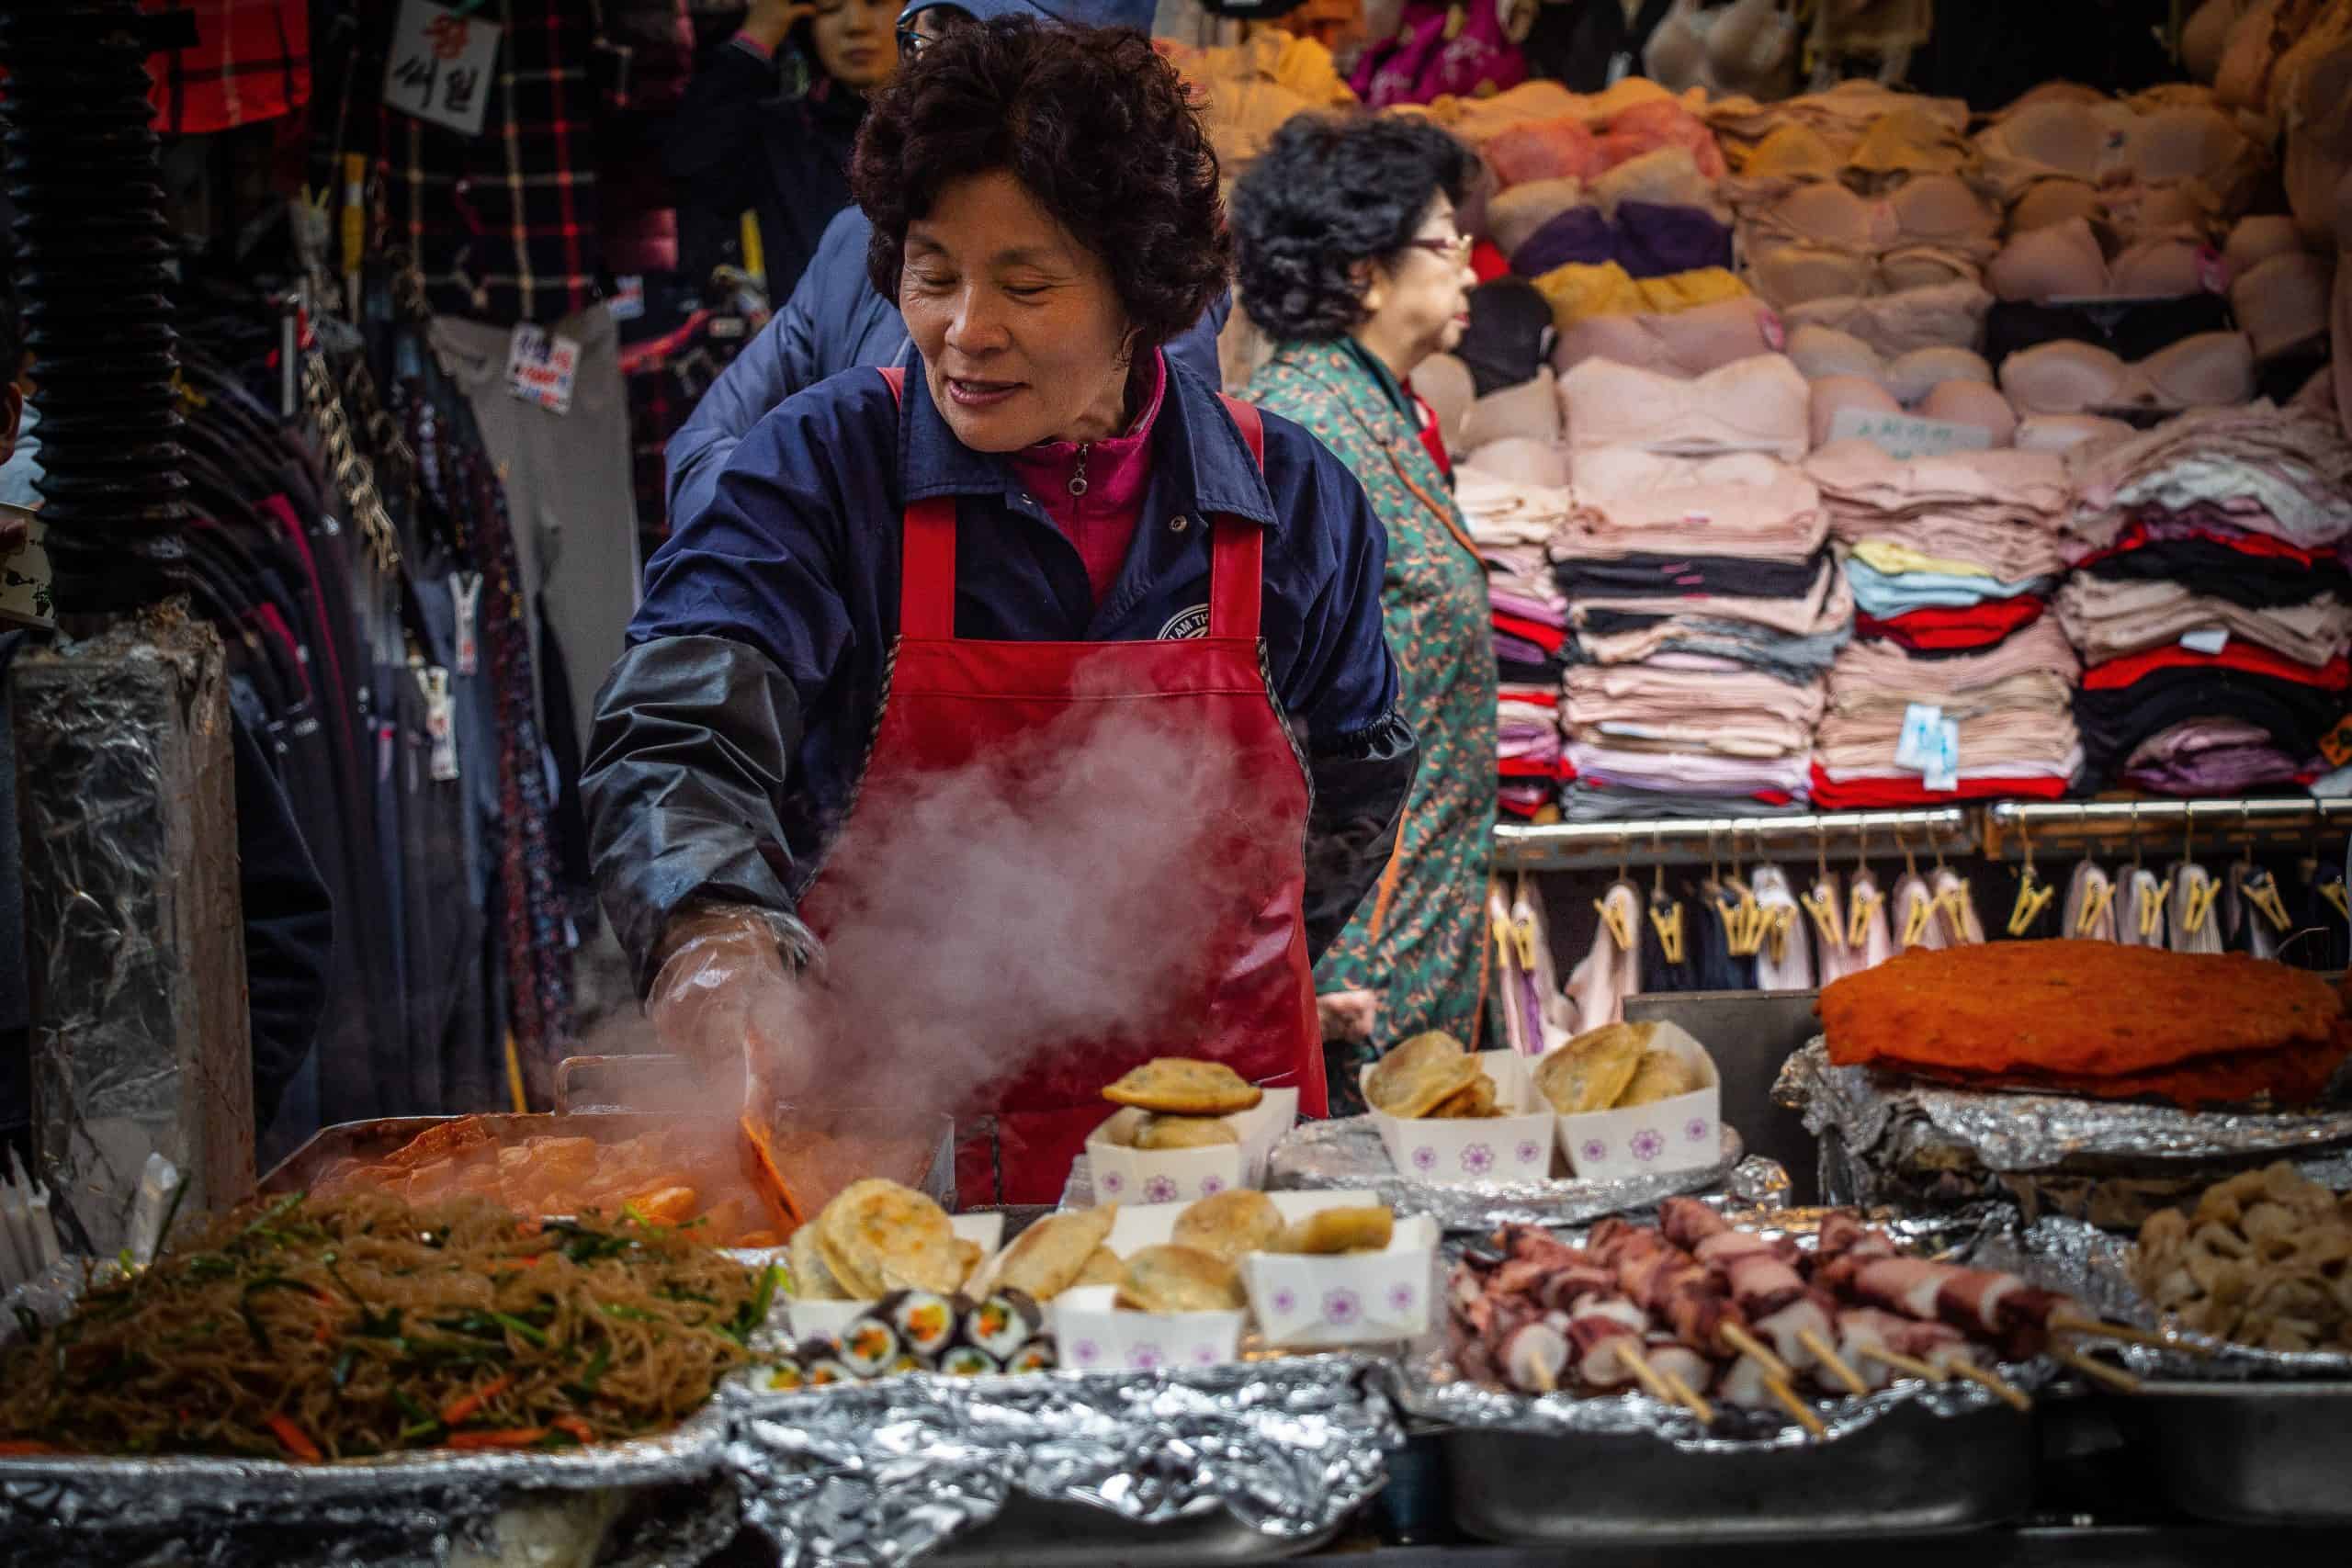 Woman preparing food in market